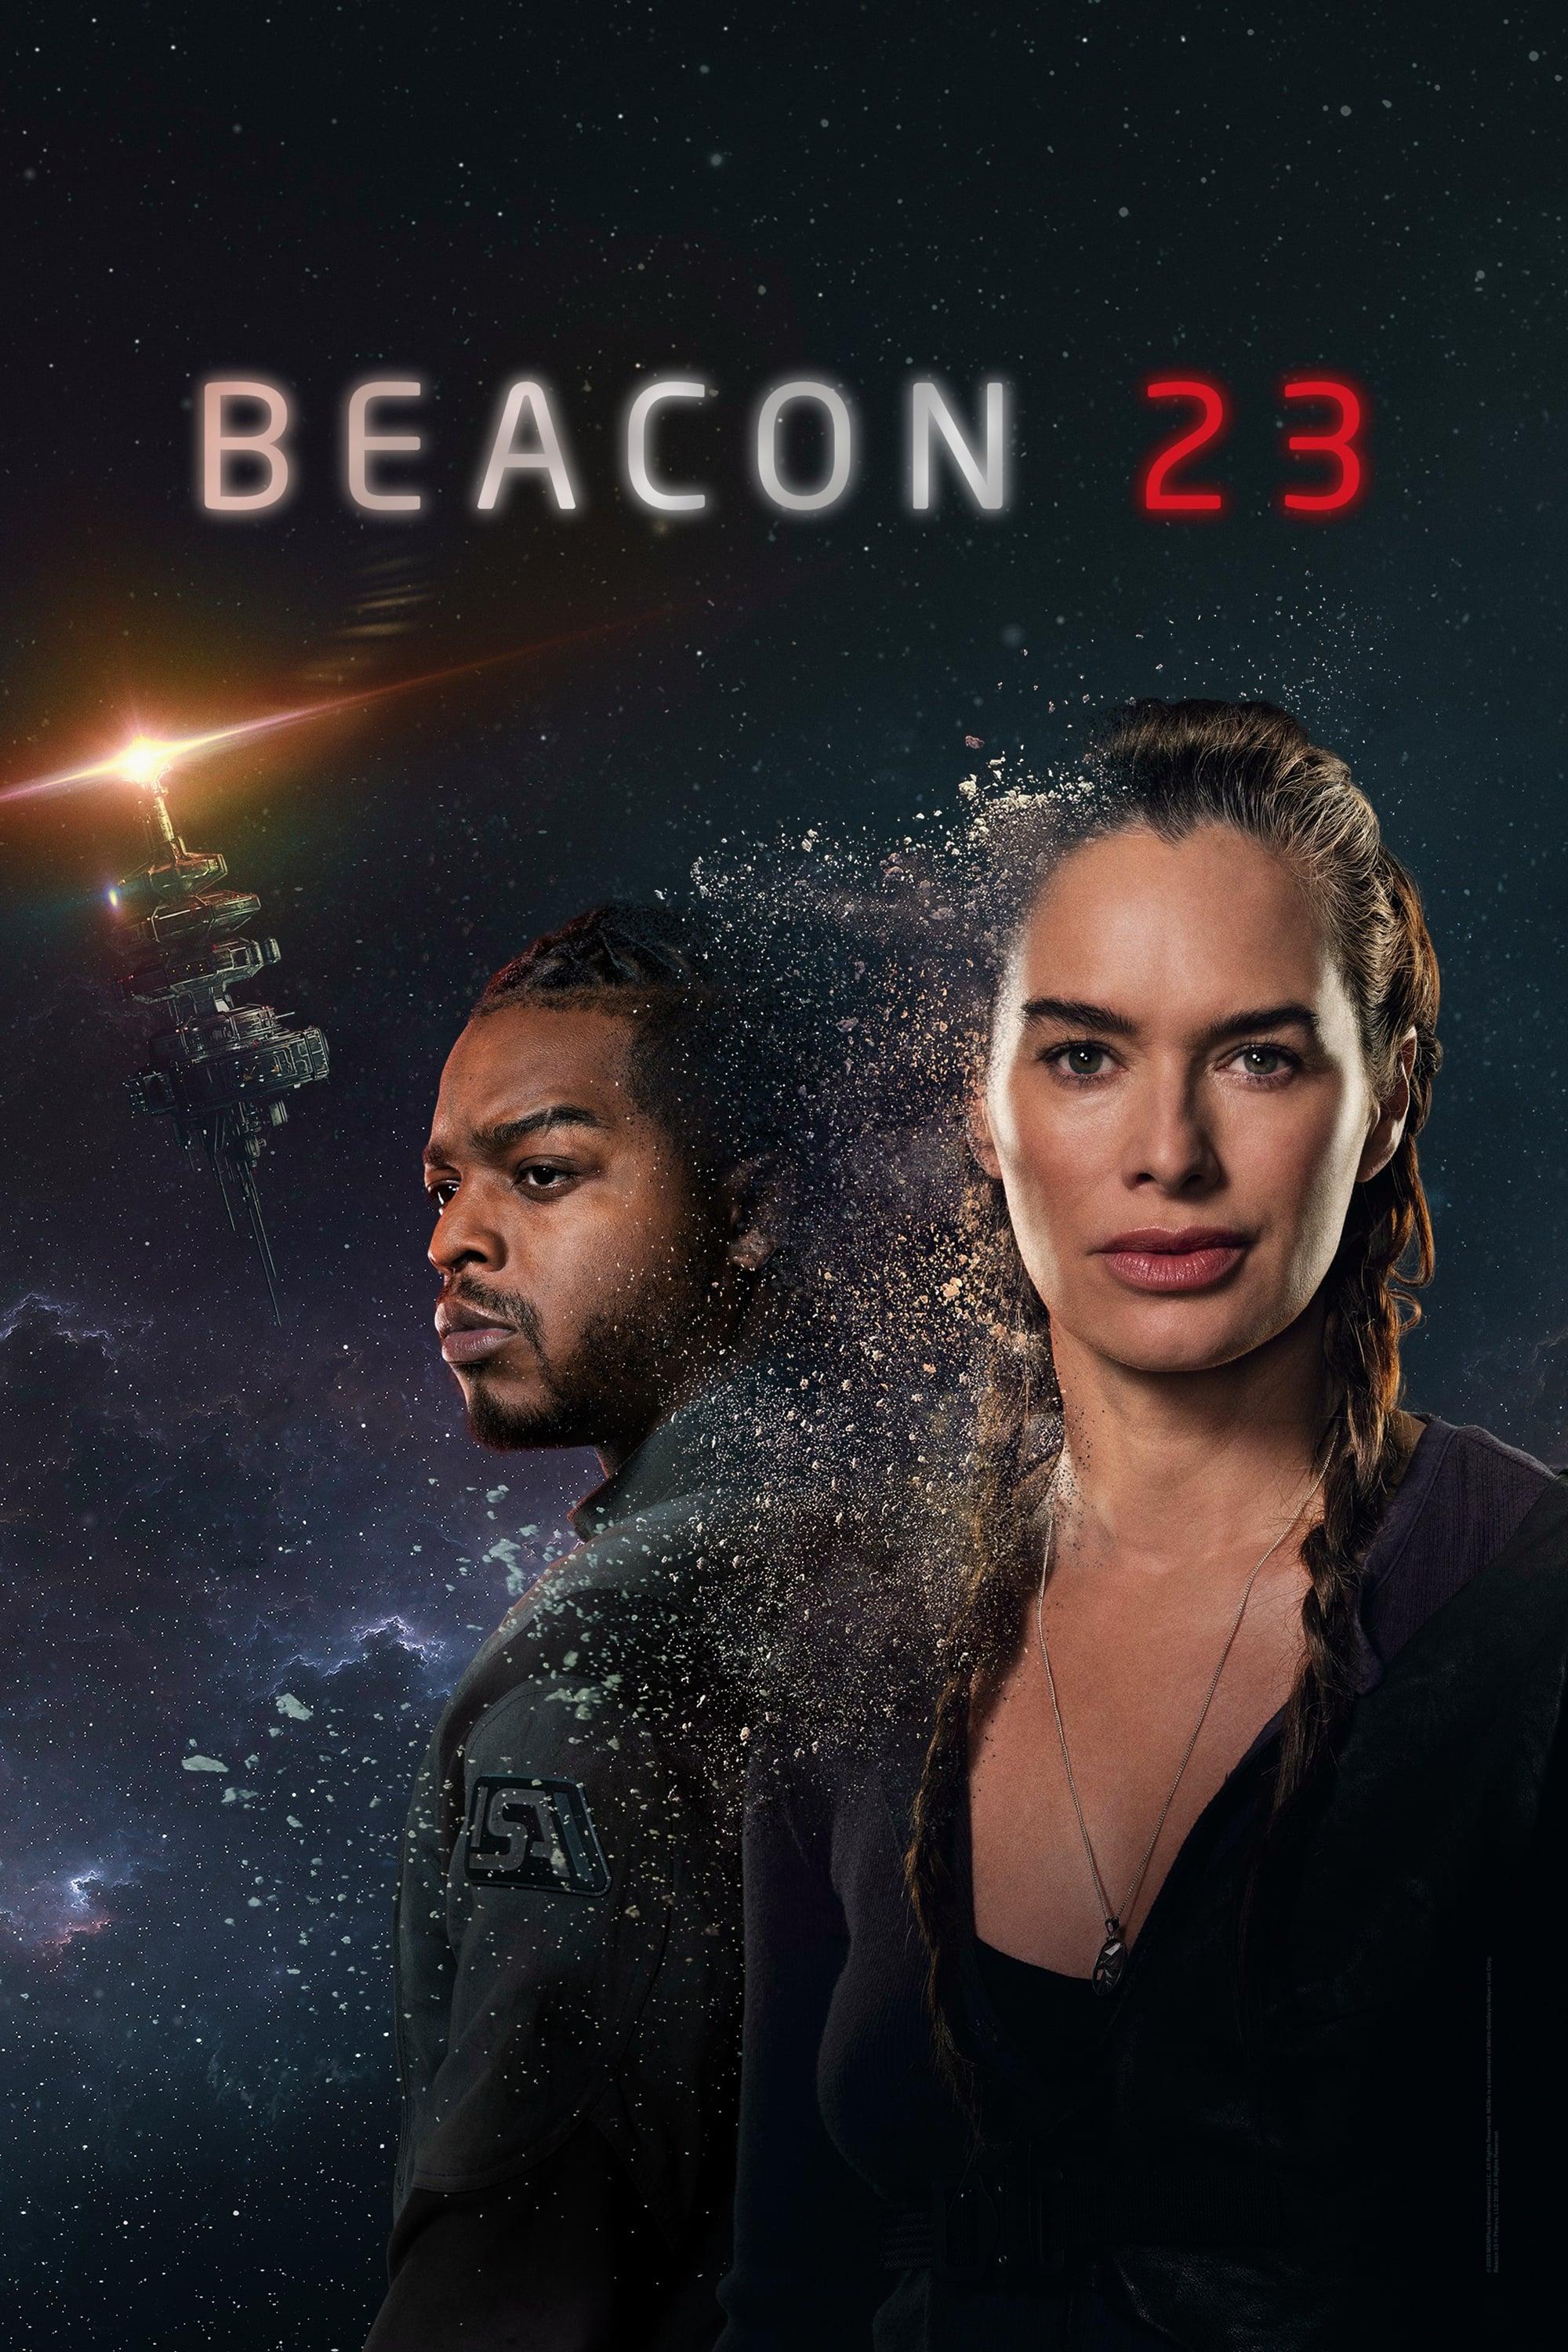 Beacon 23 poster